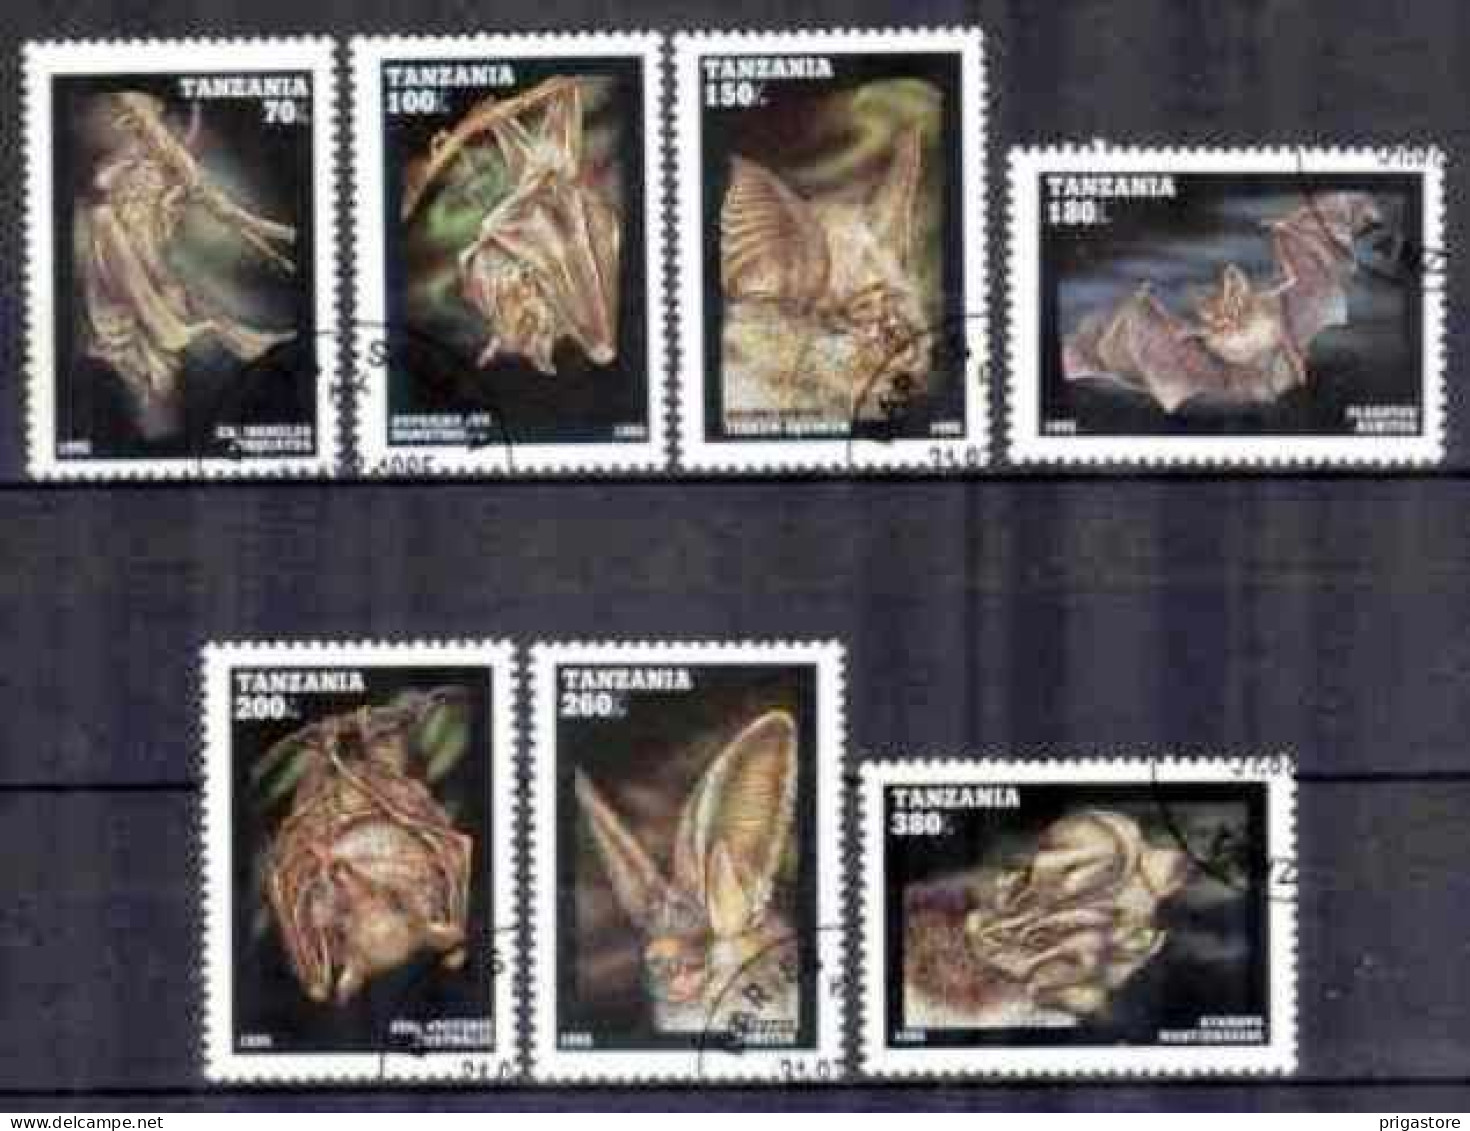 Animaux Chauve-Souris Tanzanie 1995 (17) Yvert N° 1845 à 1851 Oblitéré Used - Chauve-souris